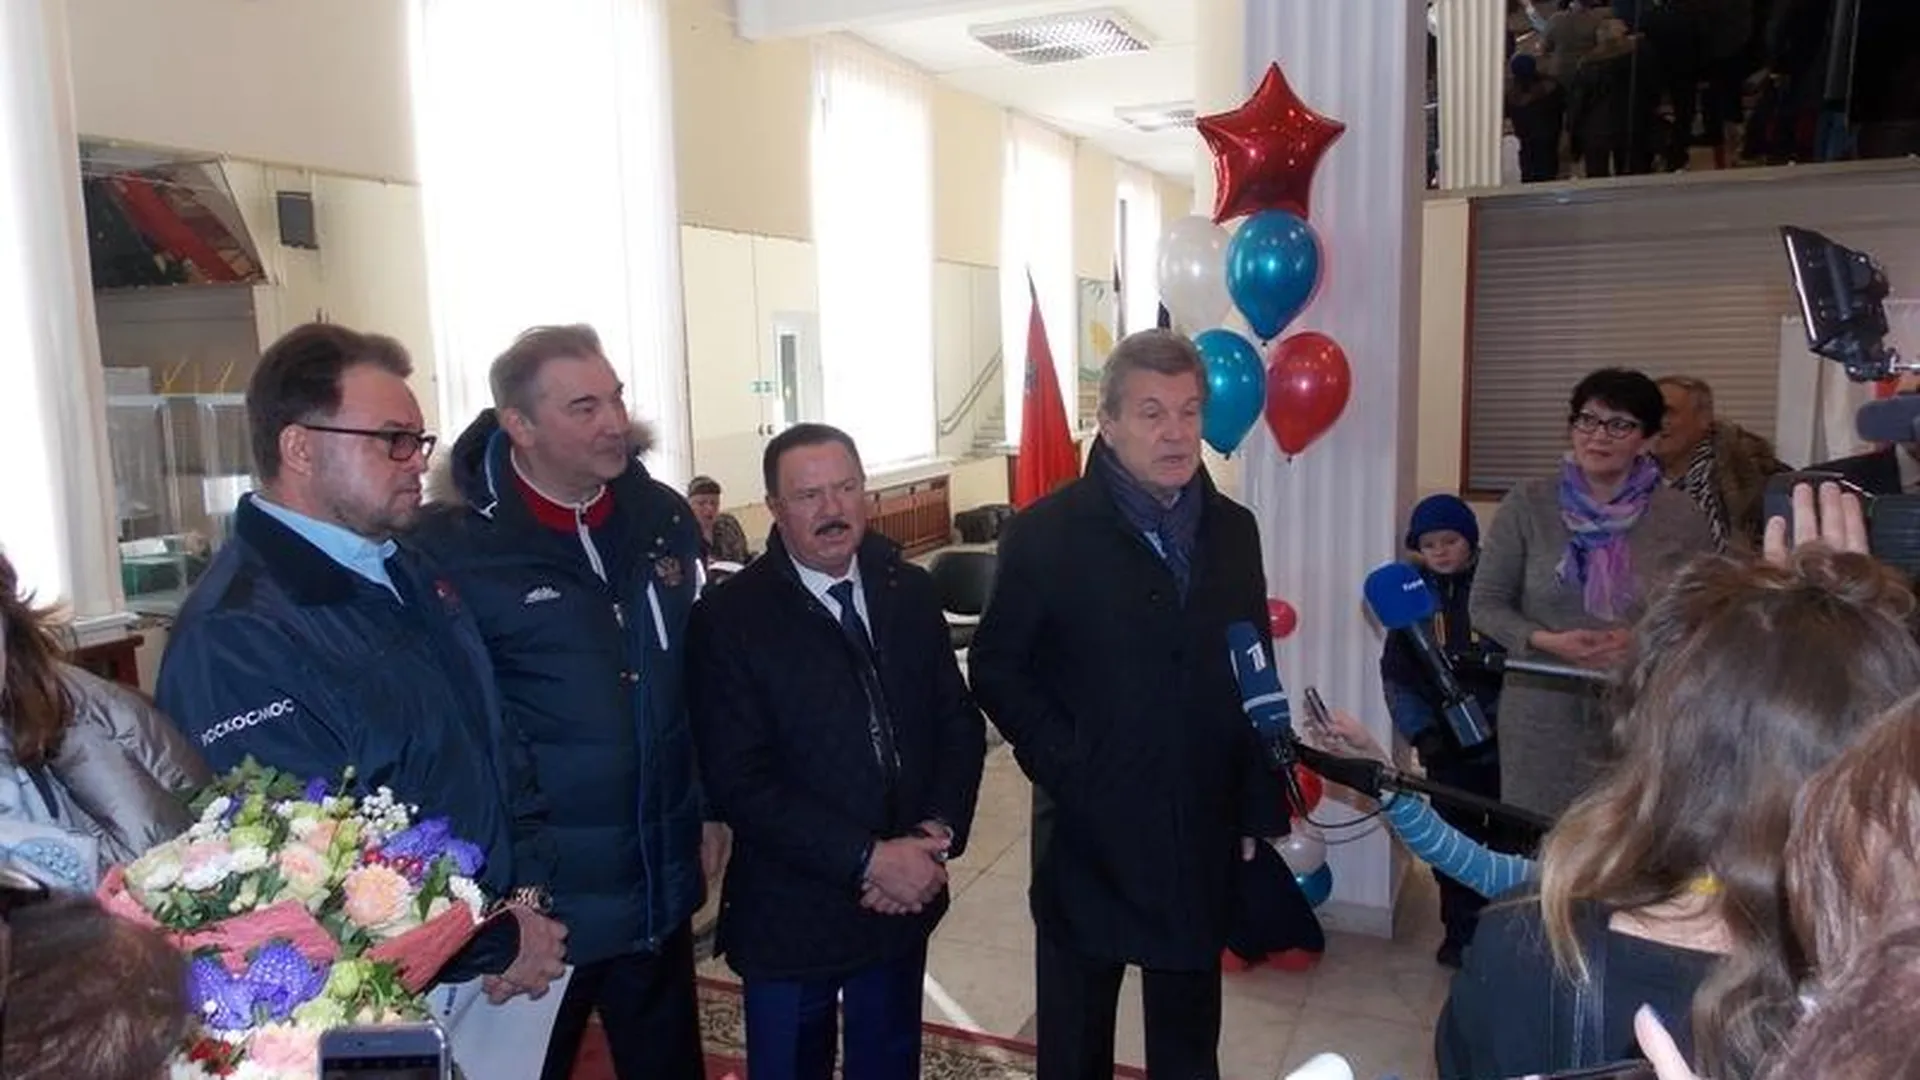 Лев Лещенко и Владислав Третьяк произвели фурор на избирательном участке в Королеве